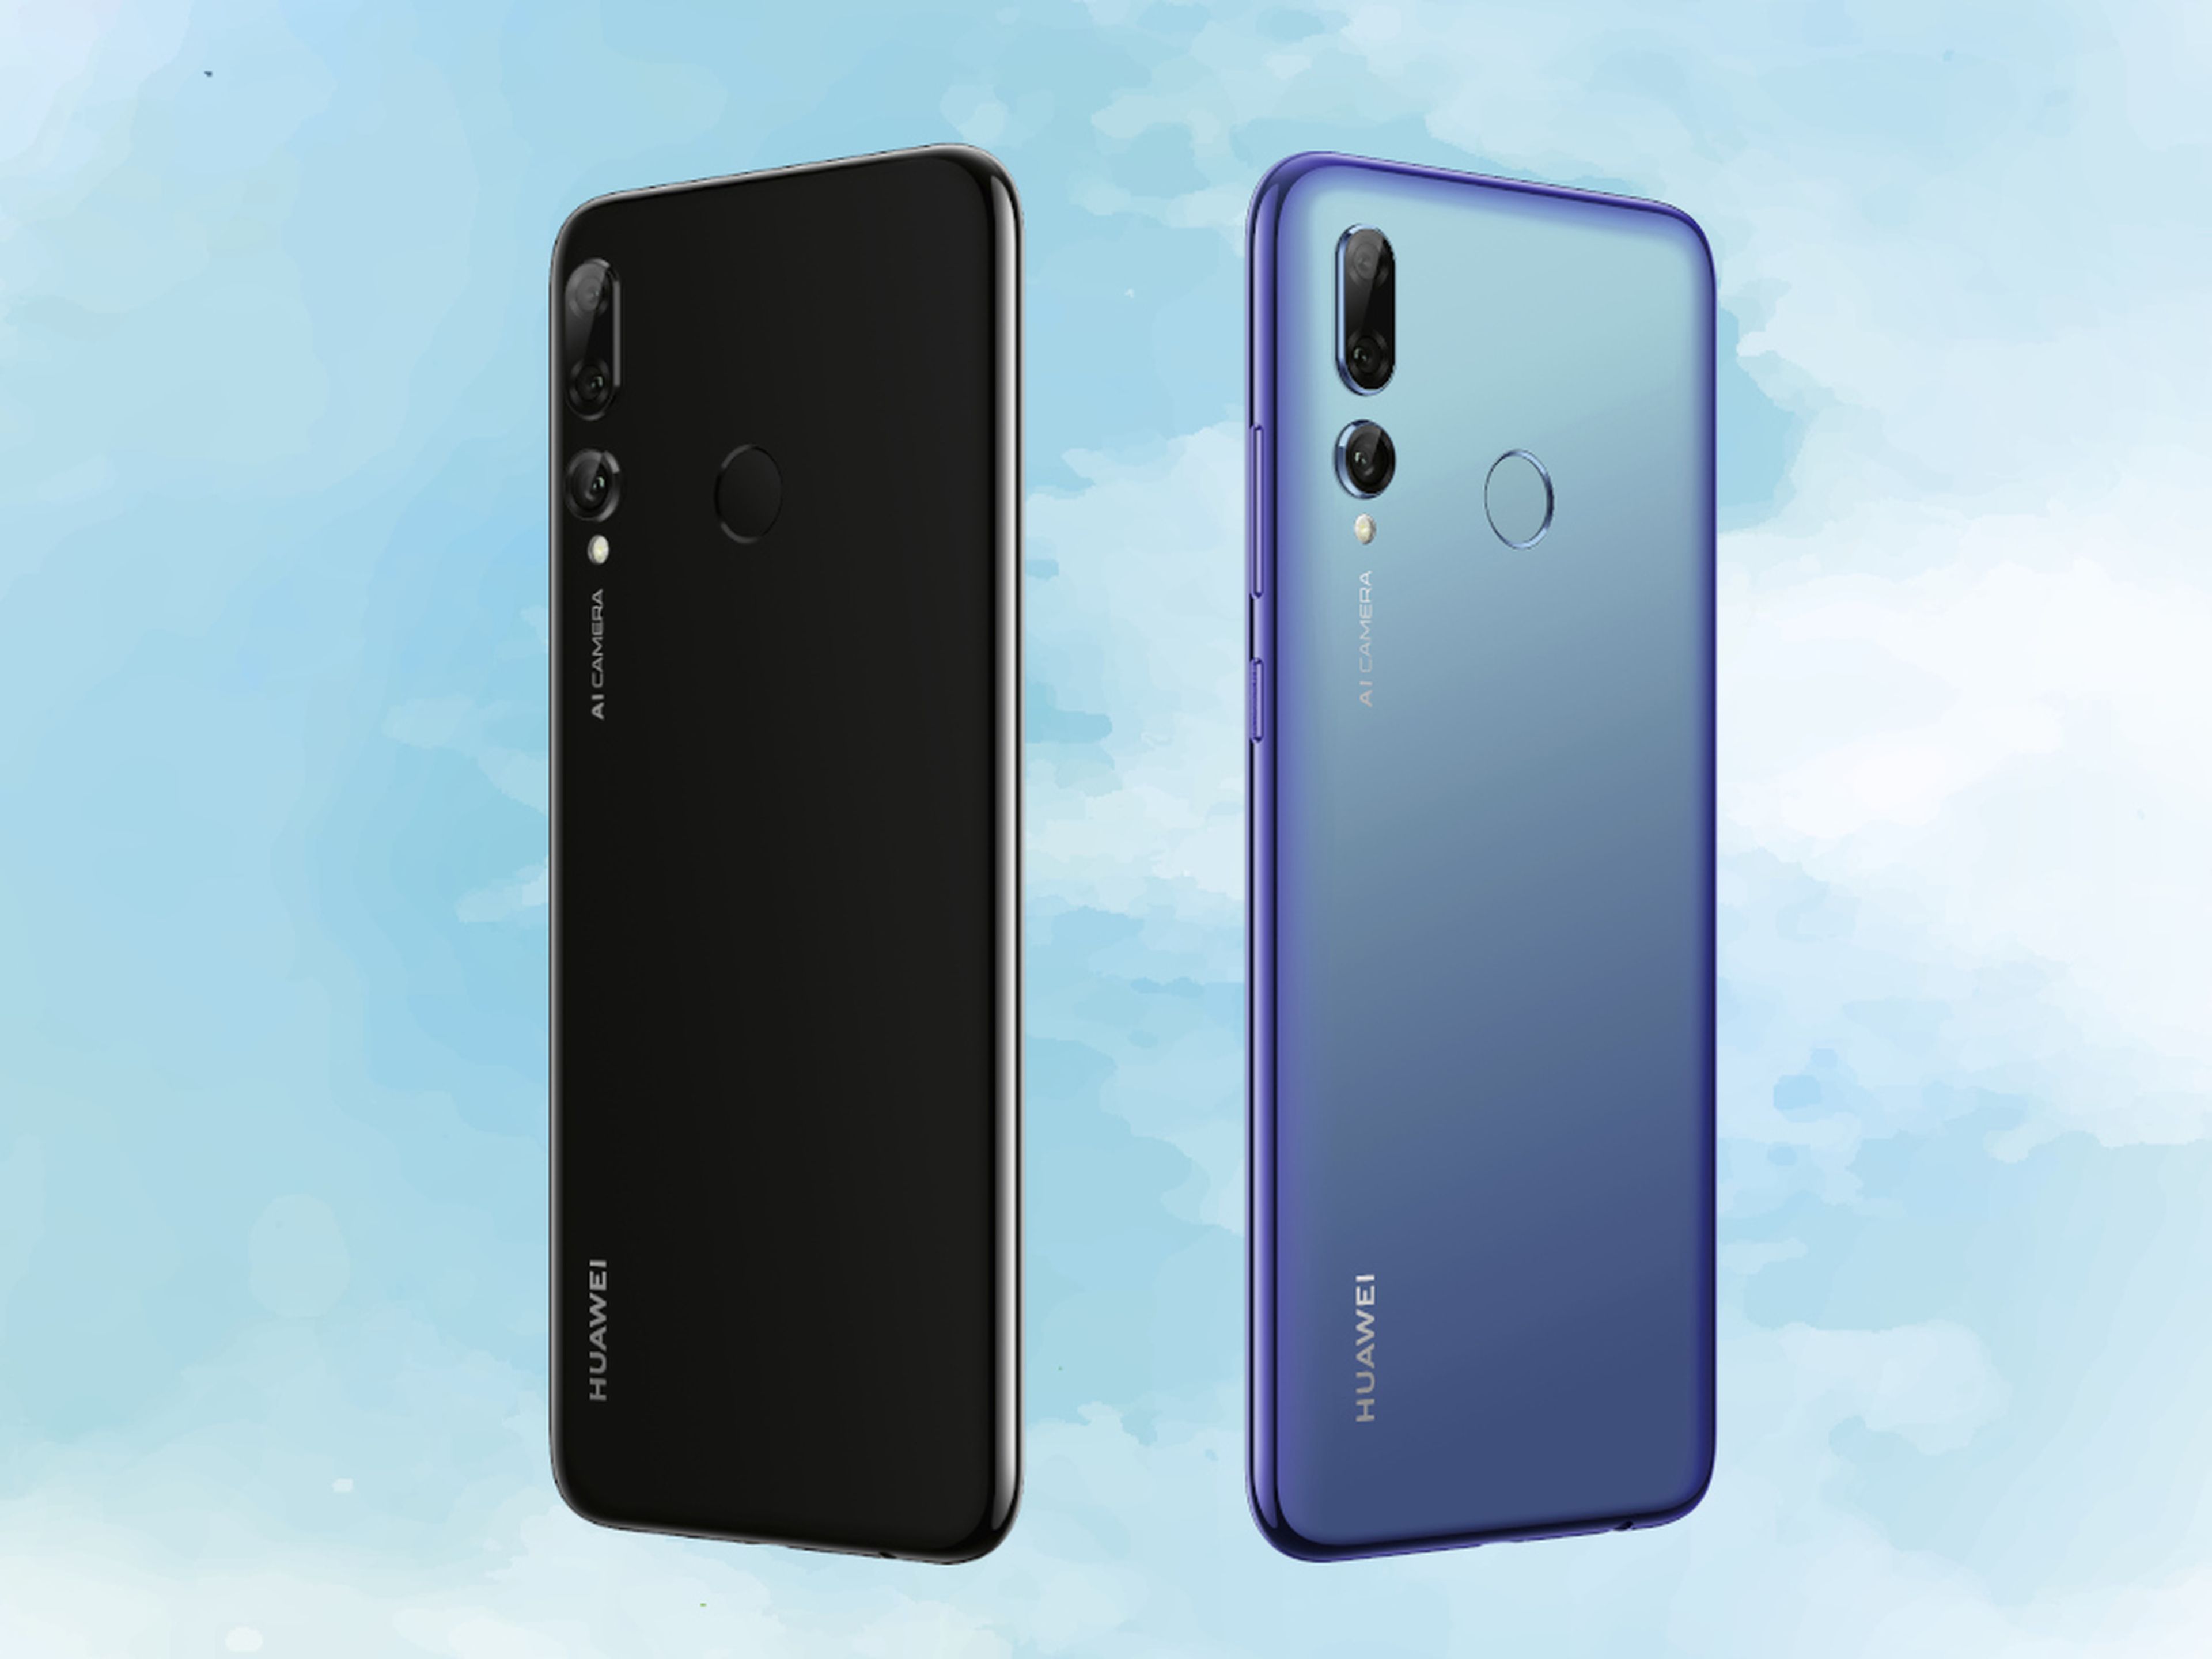 Huawei P smart + 2019